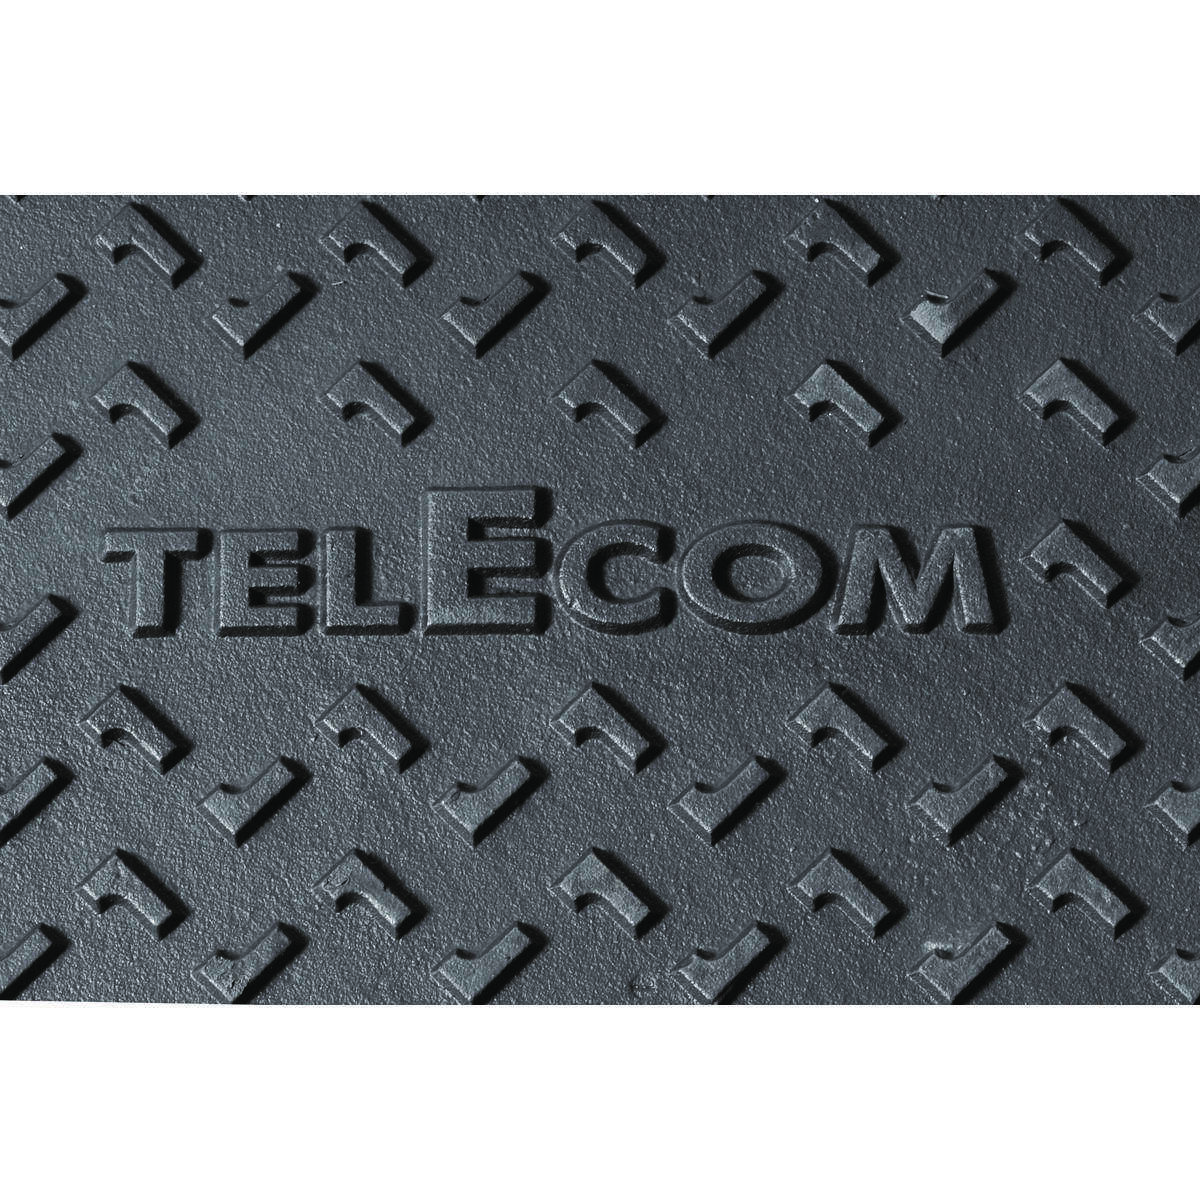 Tampon fonte B125 avec logo TELECOM